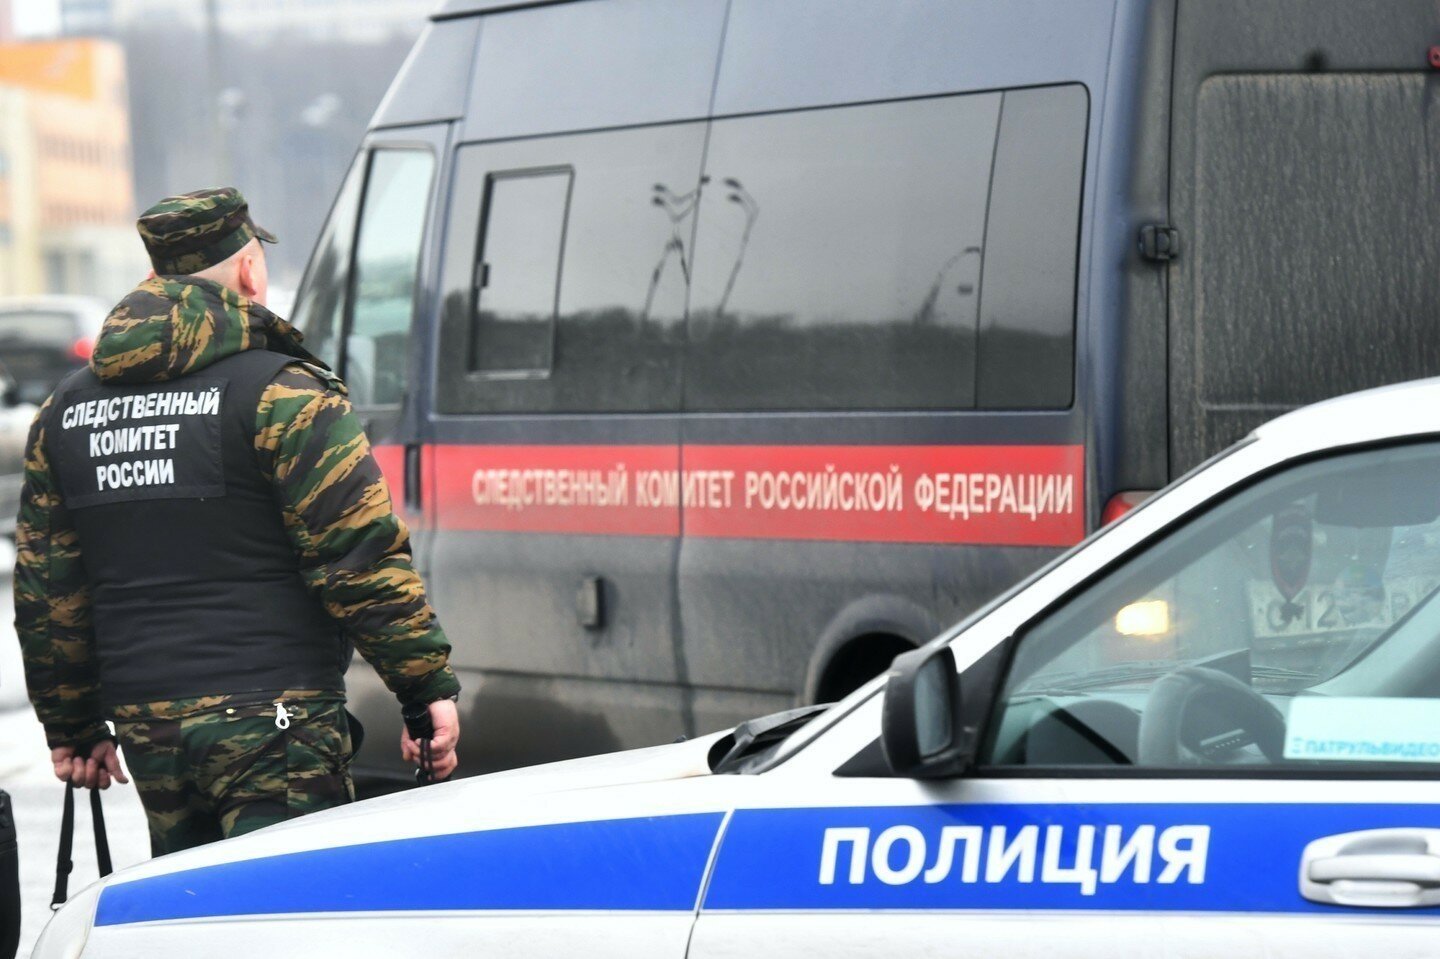 Жительница Ульяновска зарезала троих детей и свела счеты с жизнью: подробности трагедии